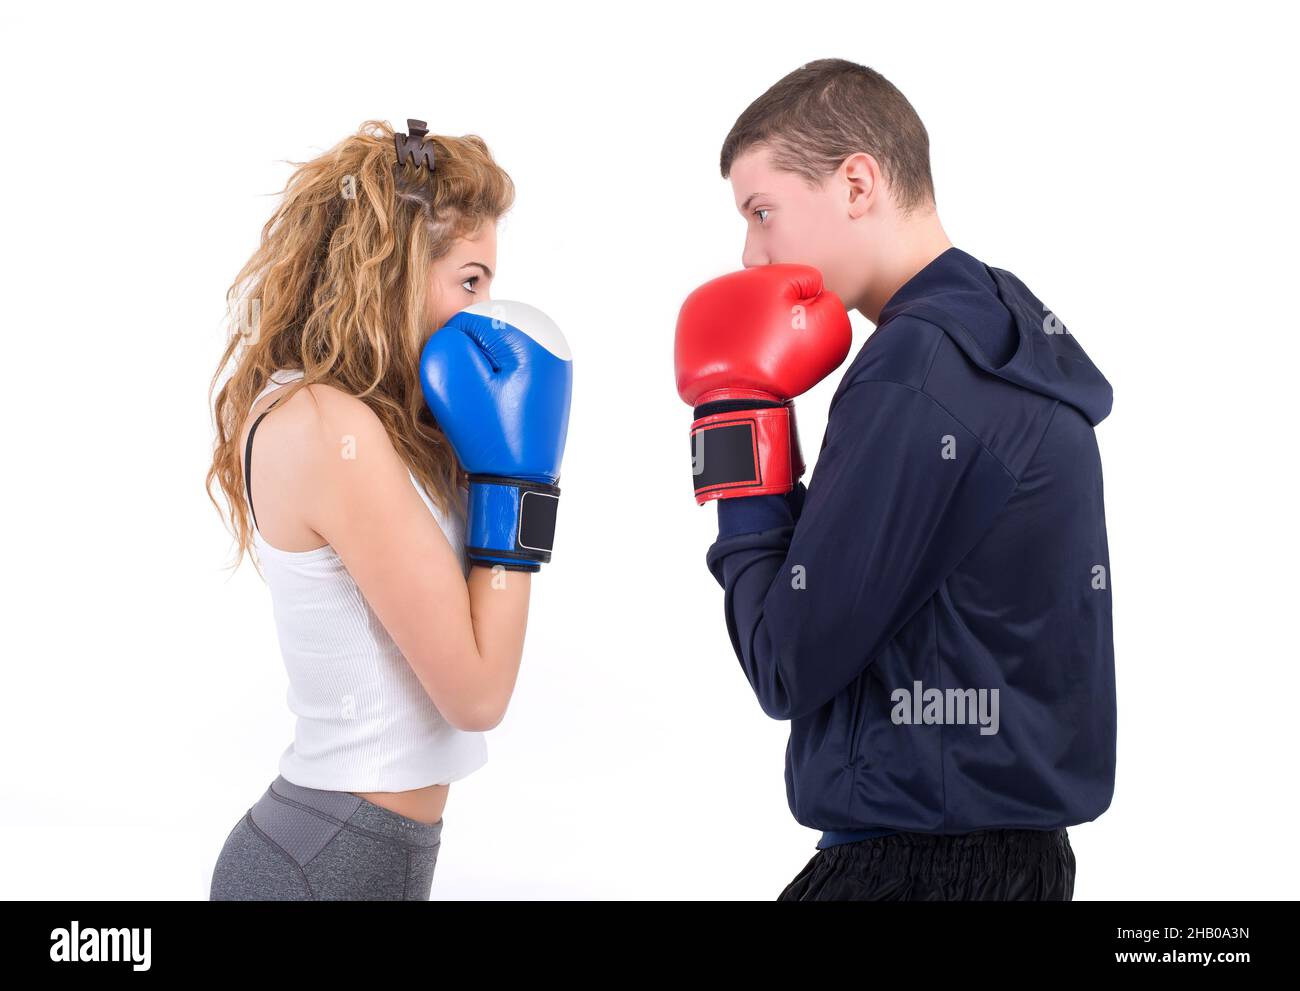 Kickboxing fille avec entraîneur en train de sparring.Isolé sur un fond blanc.Prise de vue en studio Banque D'Images